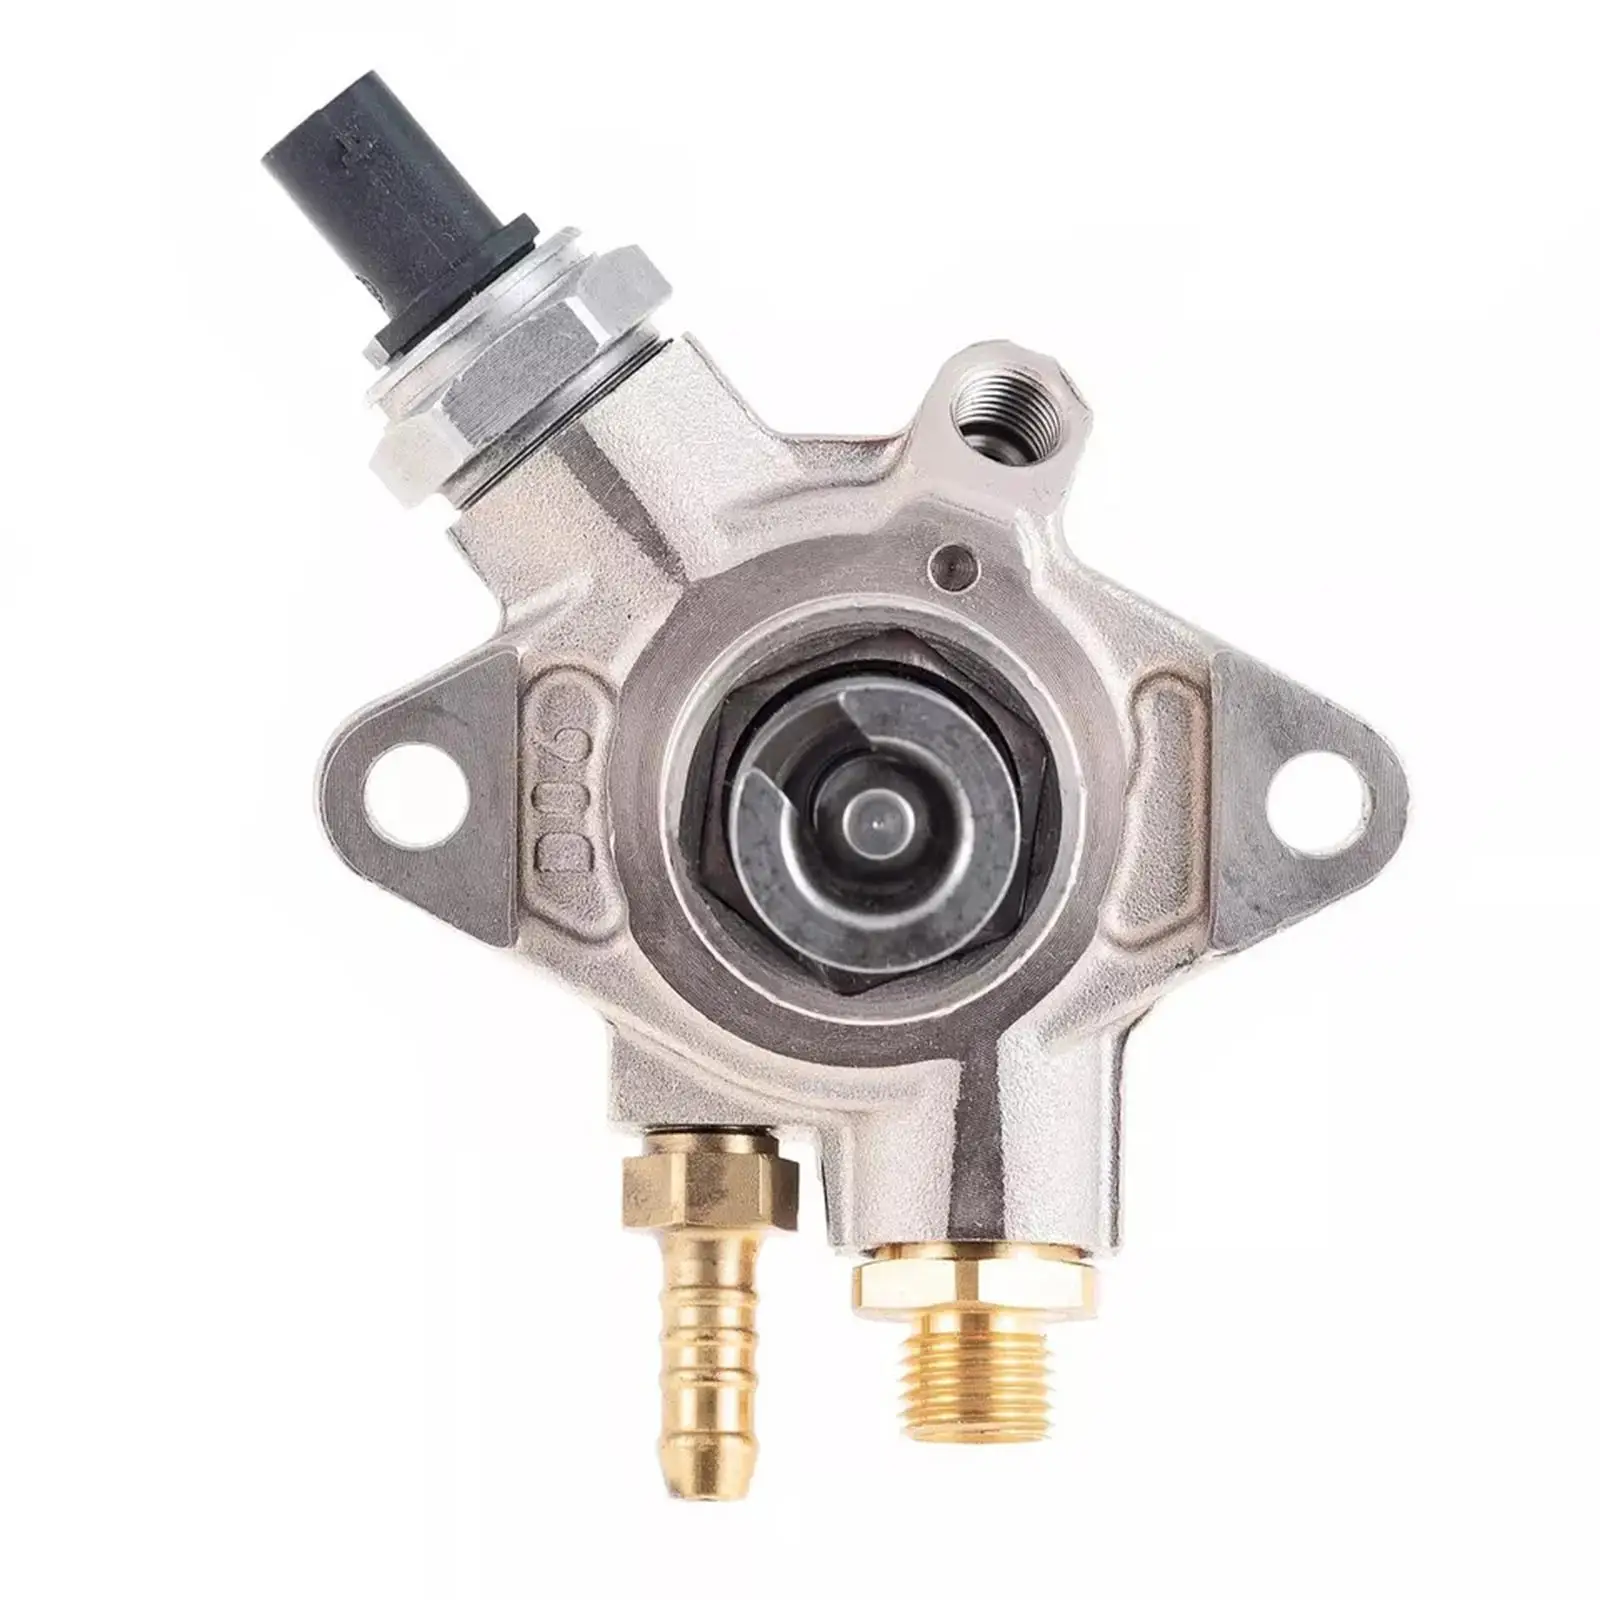 Automotive High Pressure Fuel Pump 079127025AL Accessories Replaces 079127025Q